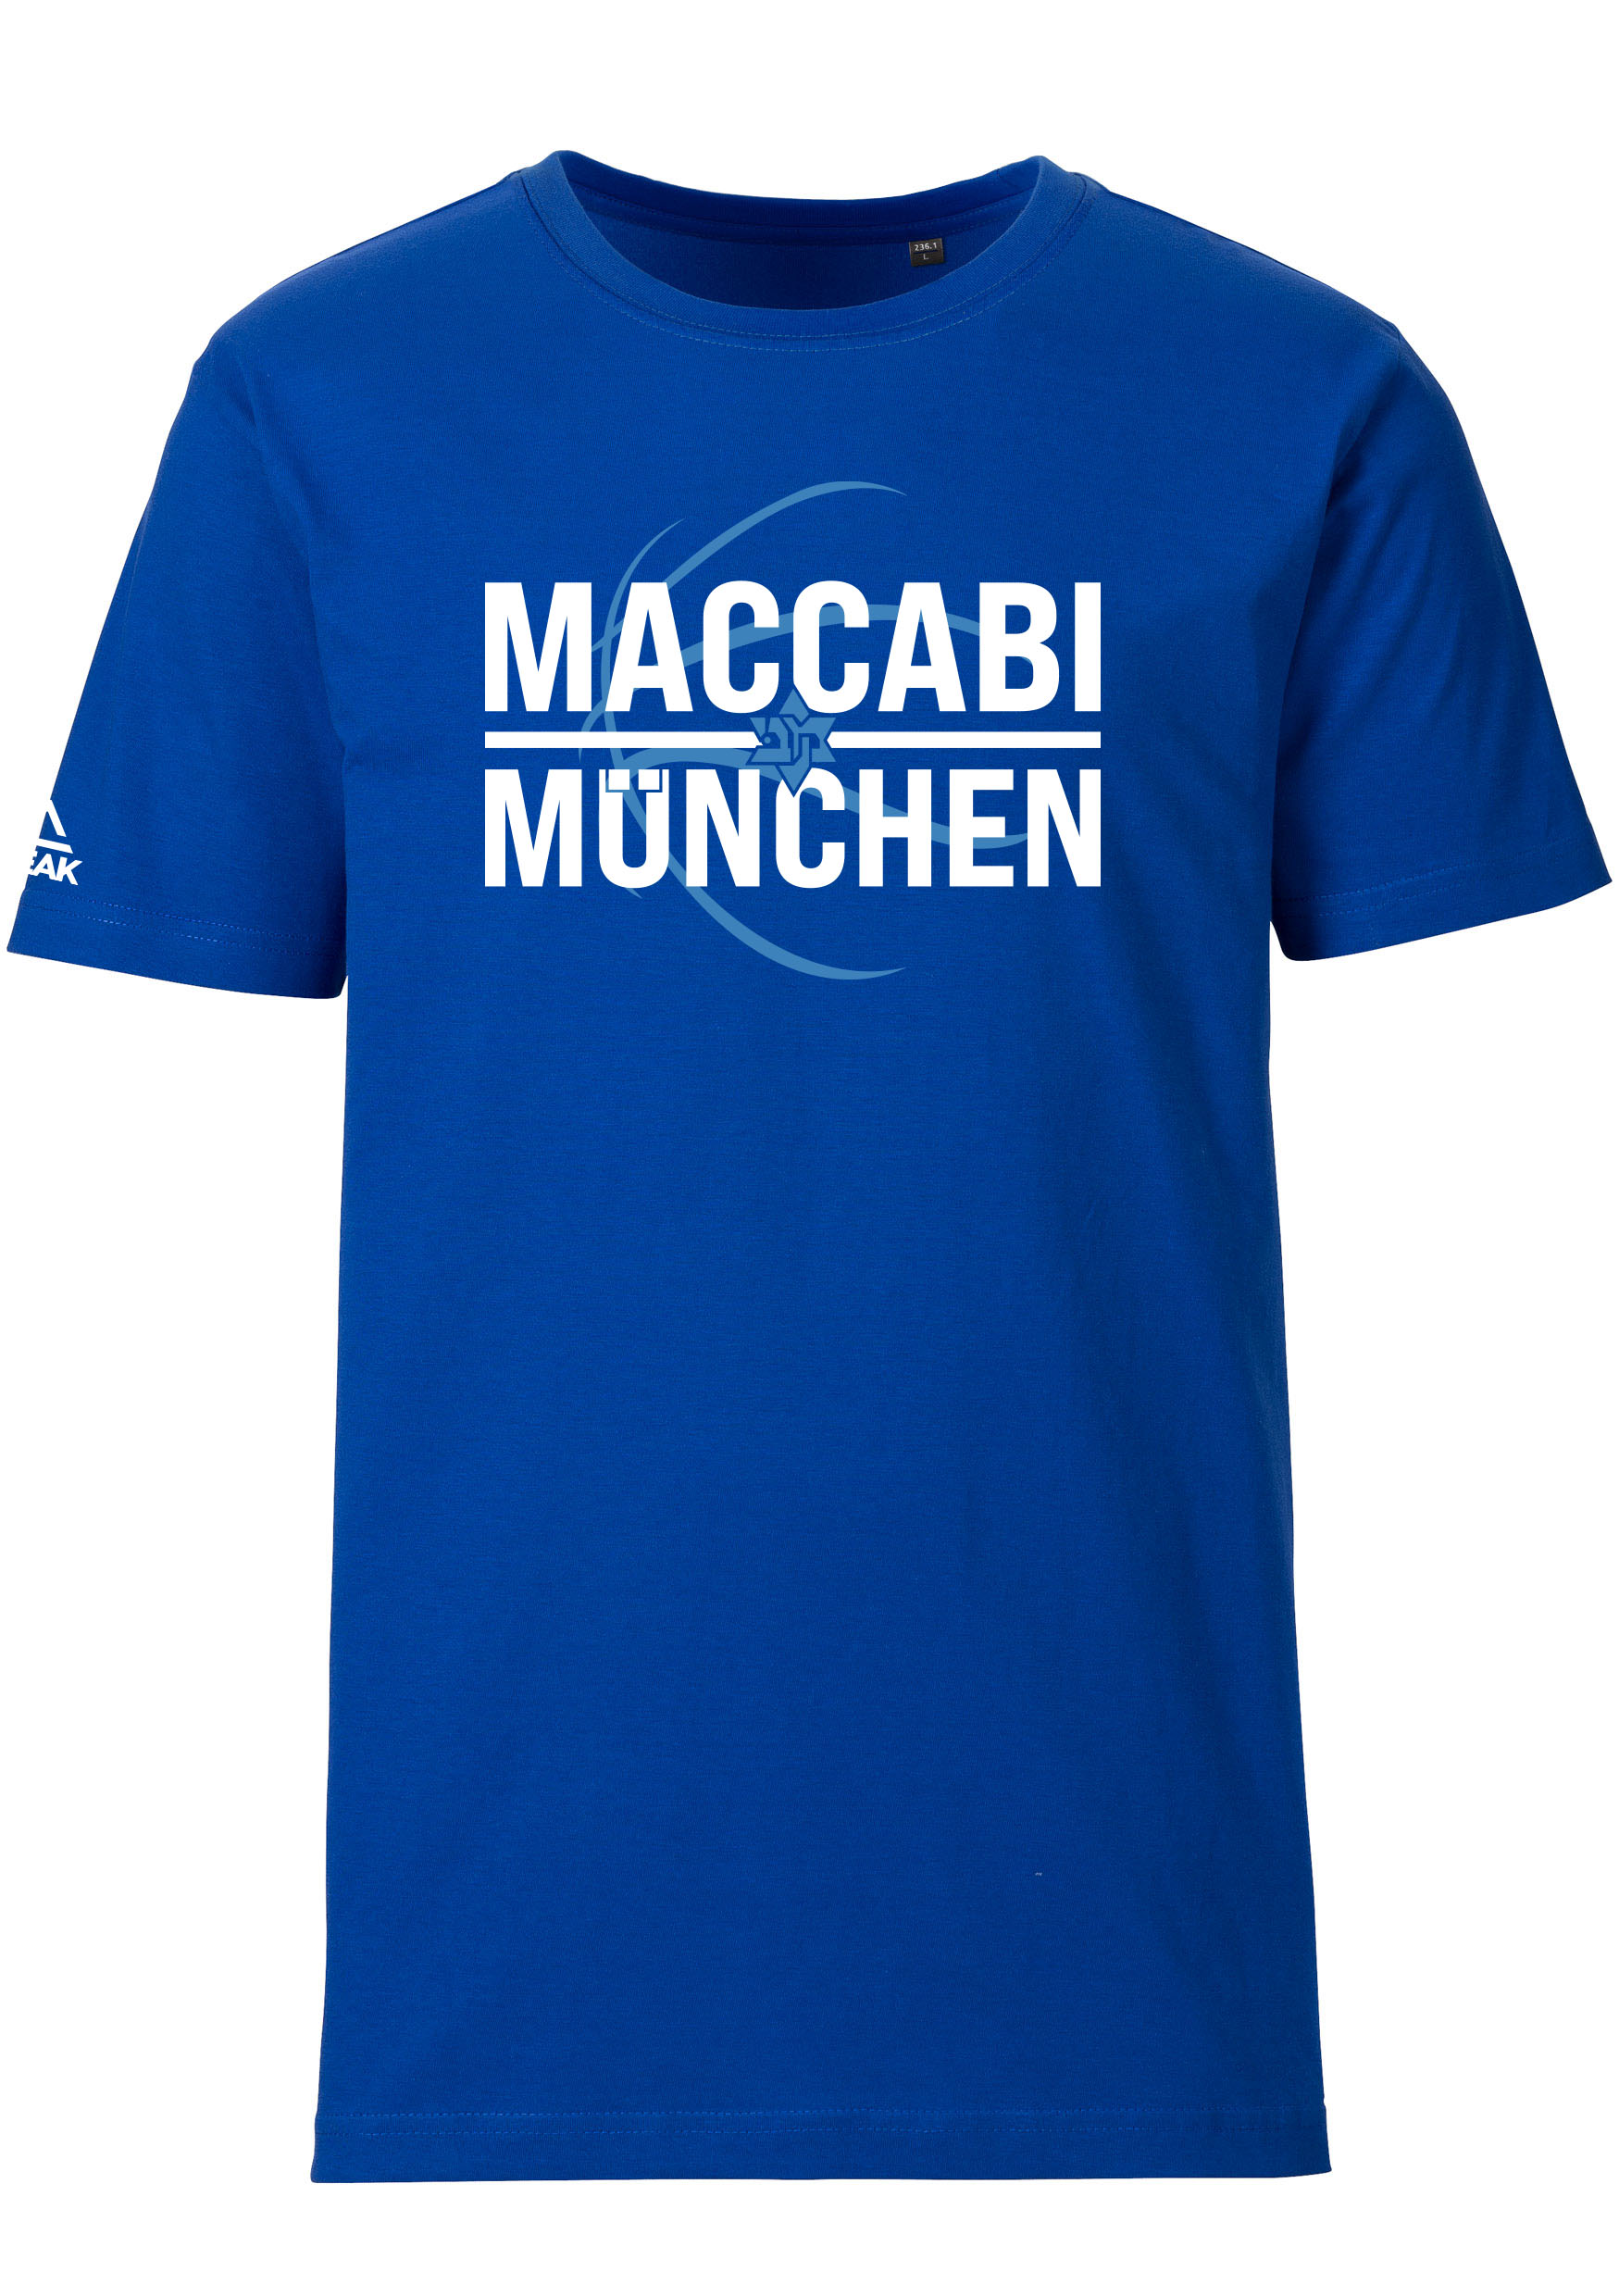 Maccabi München T-Shirt Kids blau